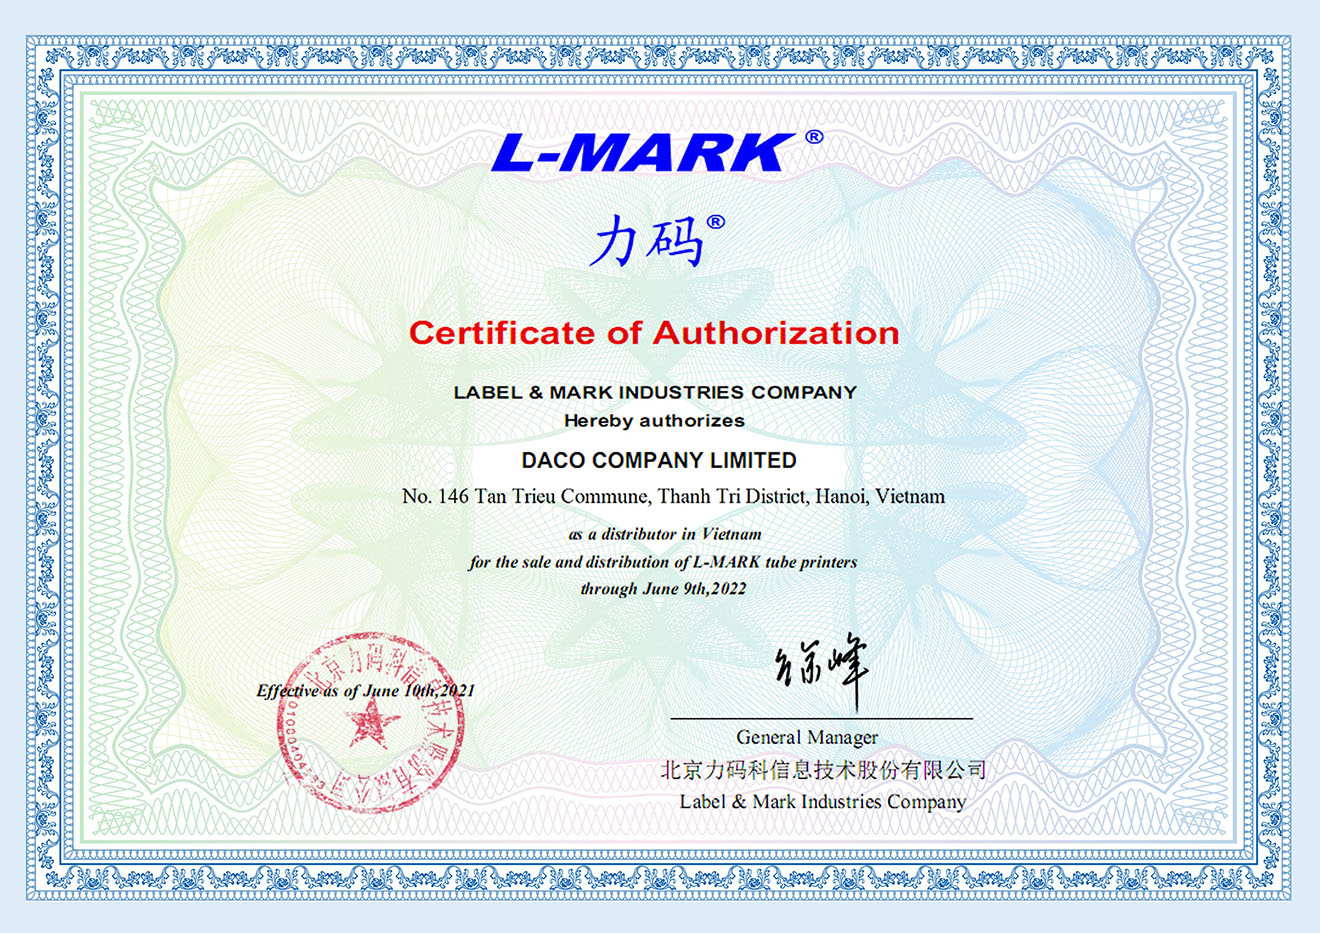 Máy in Ống lồng LMark-DACO nhà phân phối thiết bị điện tự động hóa công nghiệp tại Việt nam